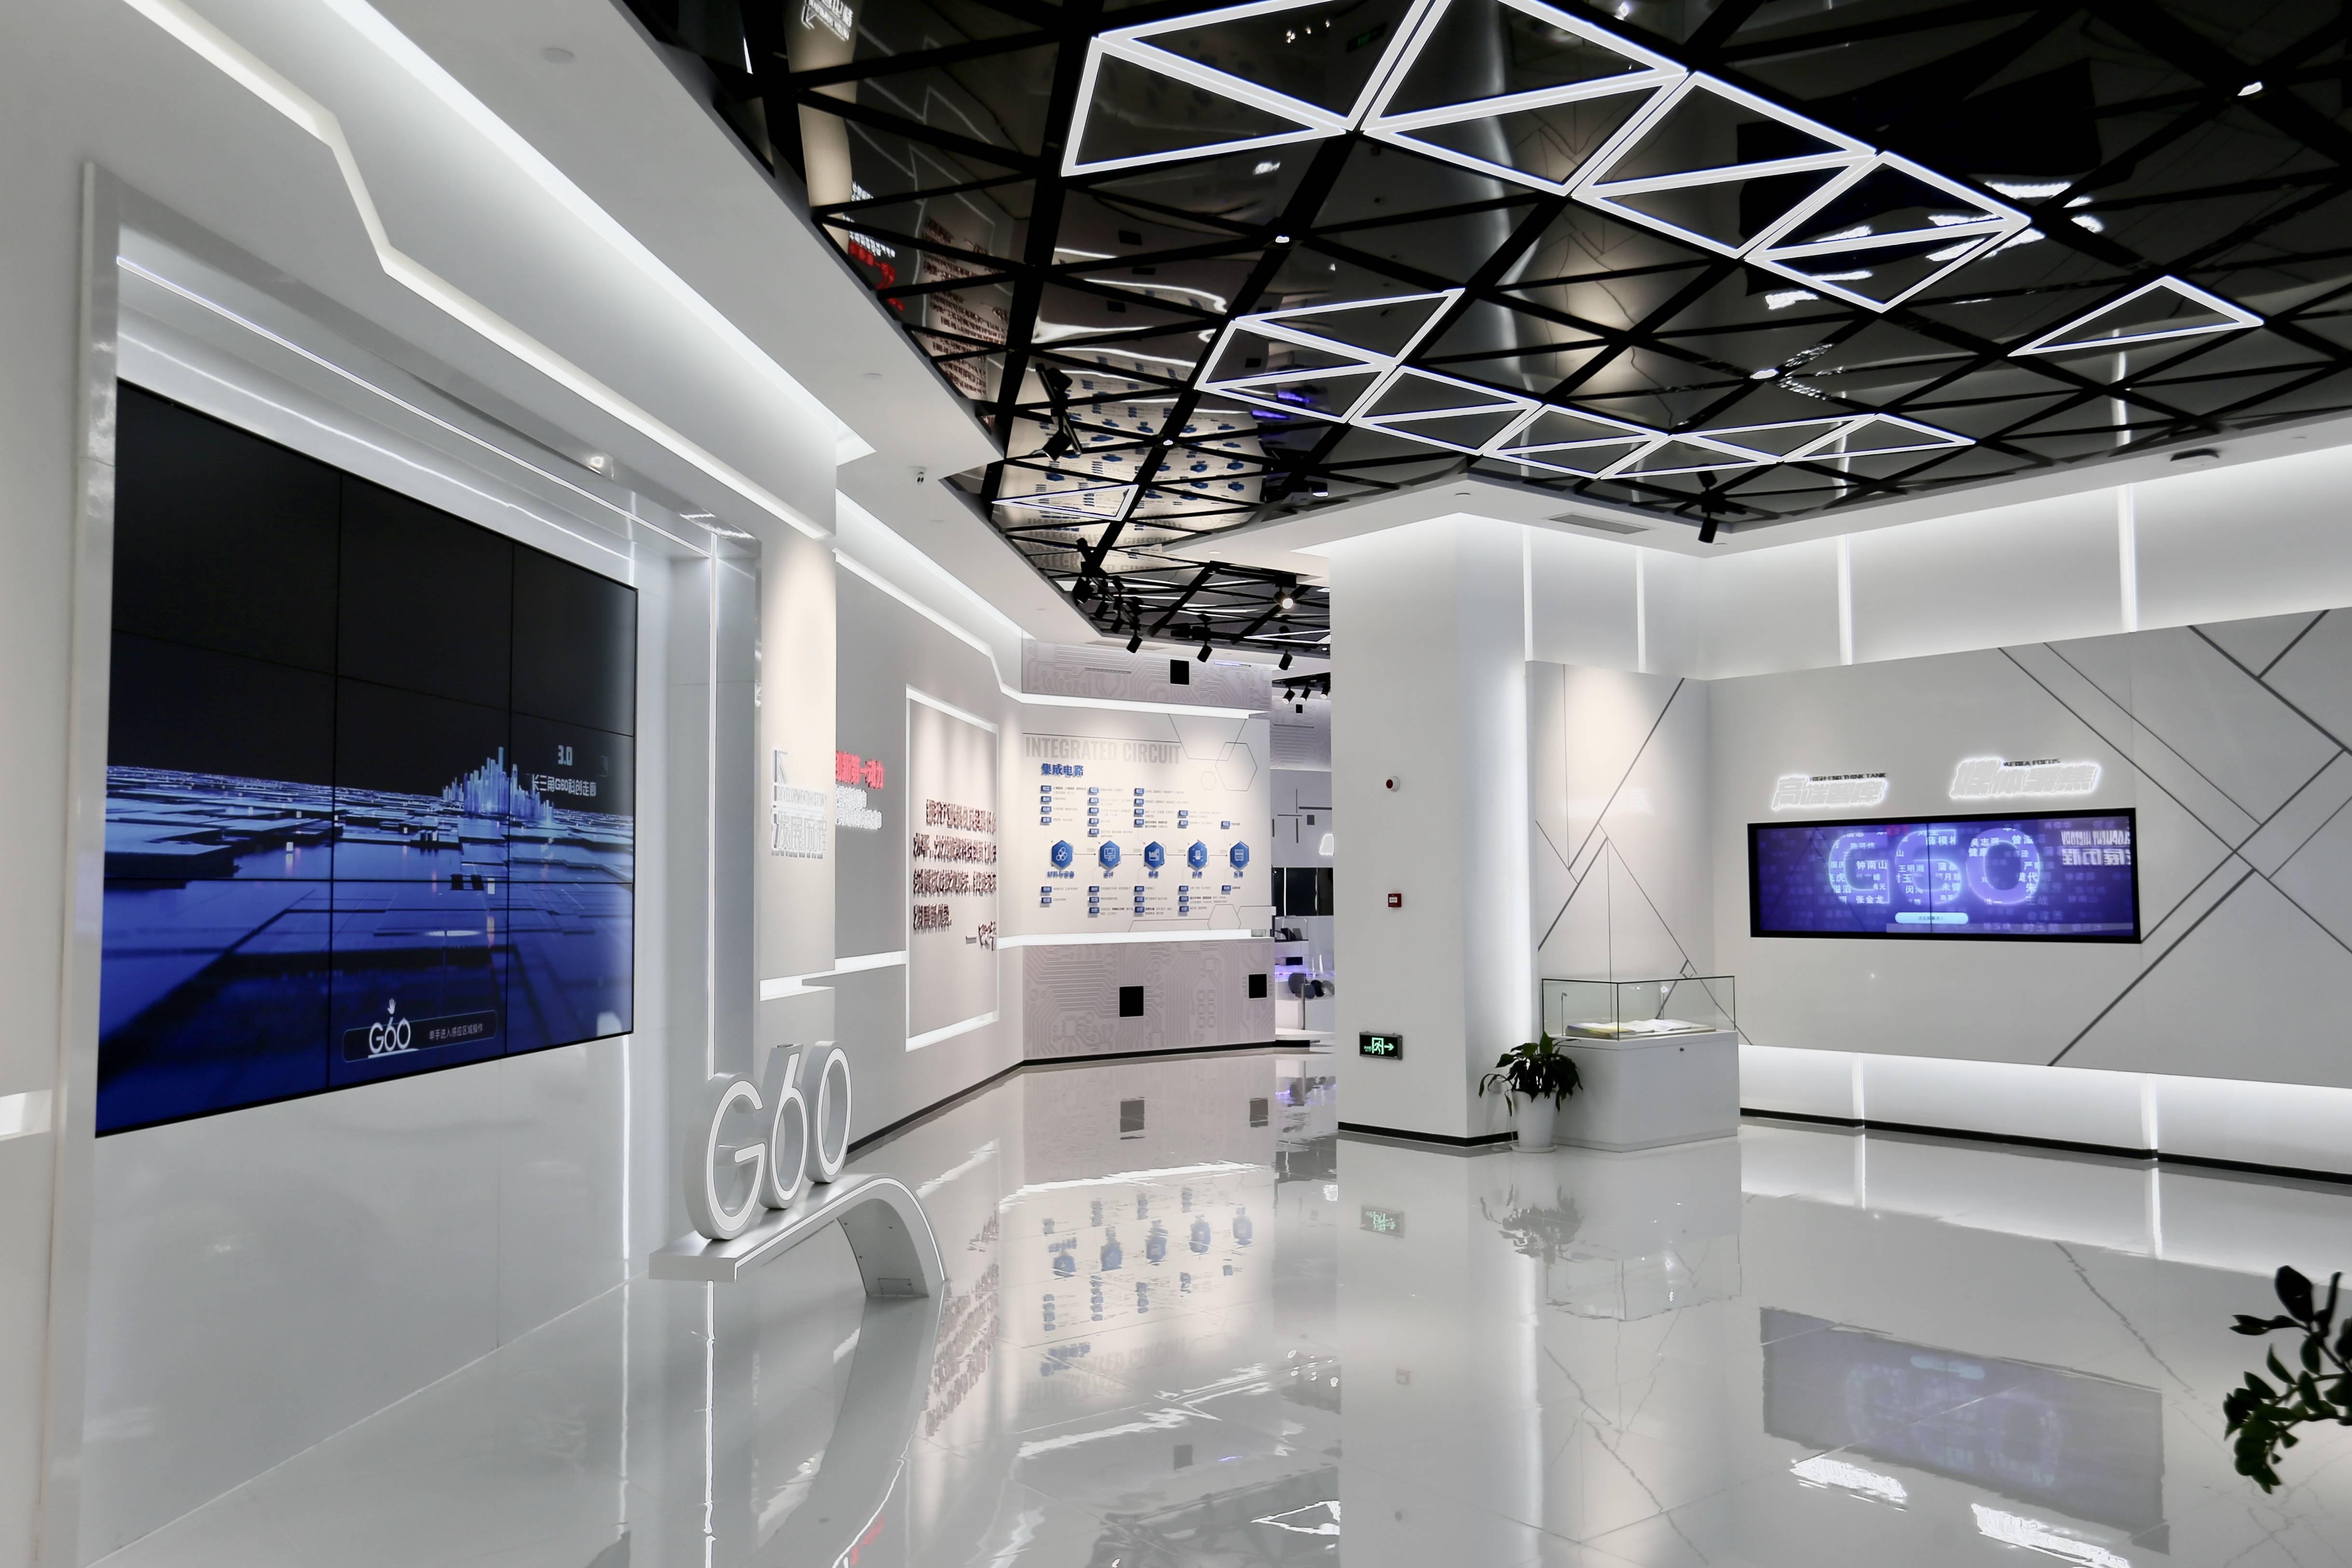 这是位于上海市松江区的长三角g60科创走廊规划展示馆内部(7月24日摄)